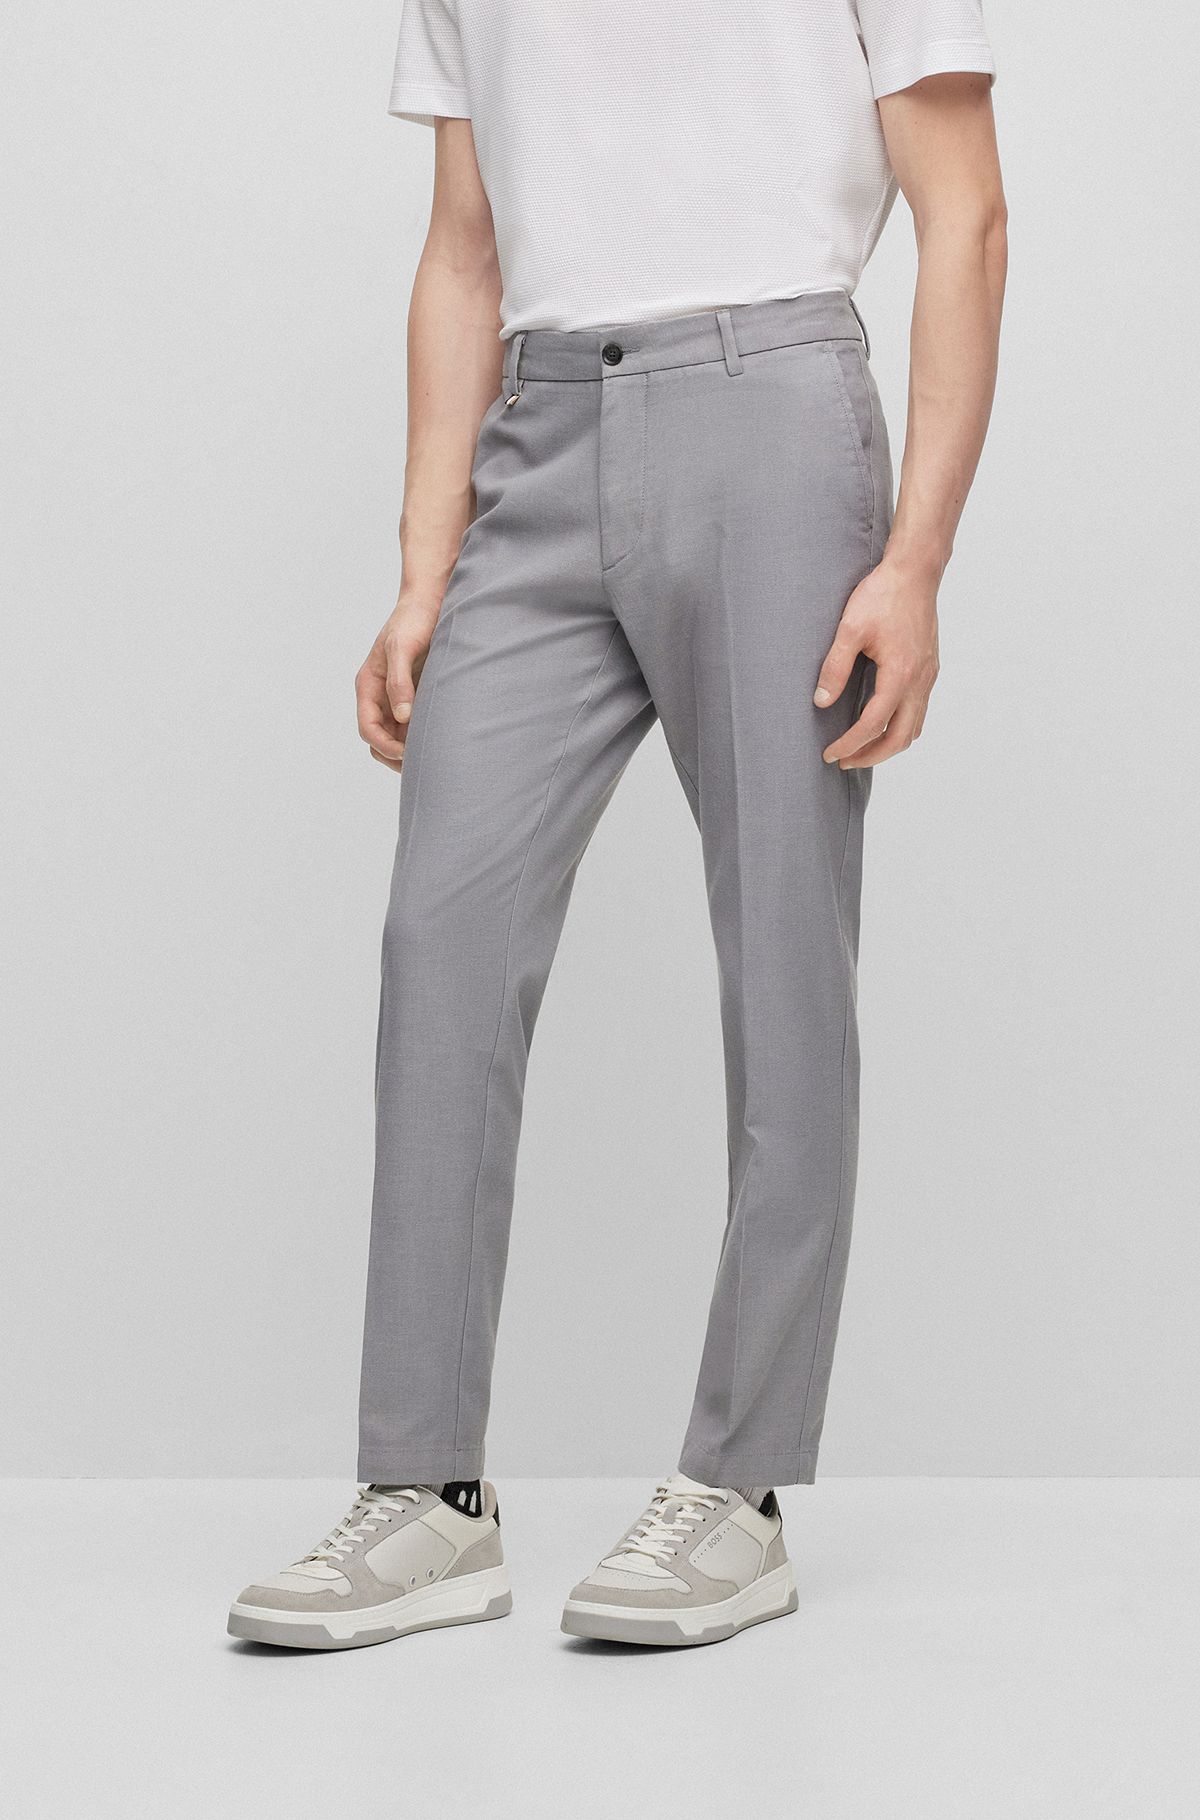 Pants in Grey by HUGO BOSS | Men | Jerseyhosen